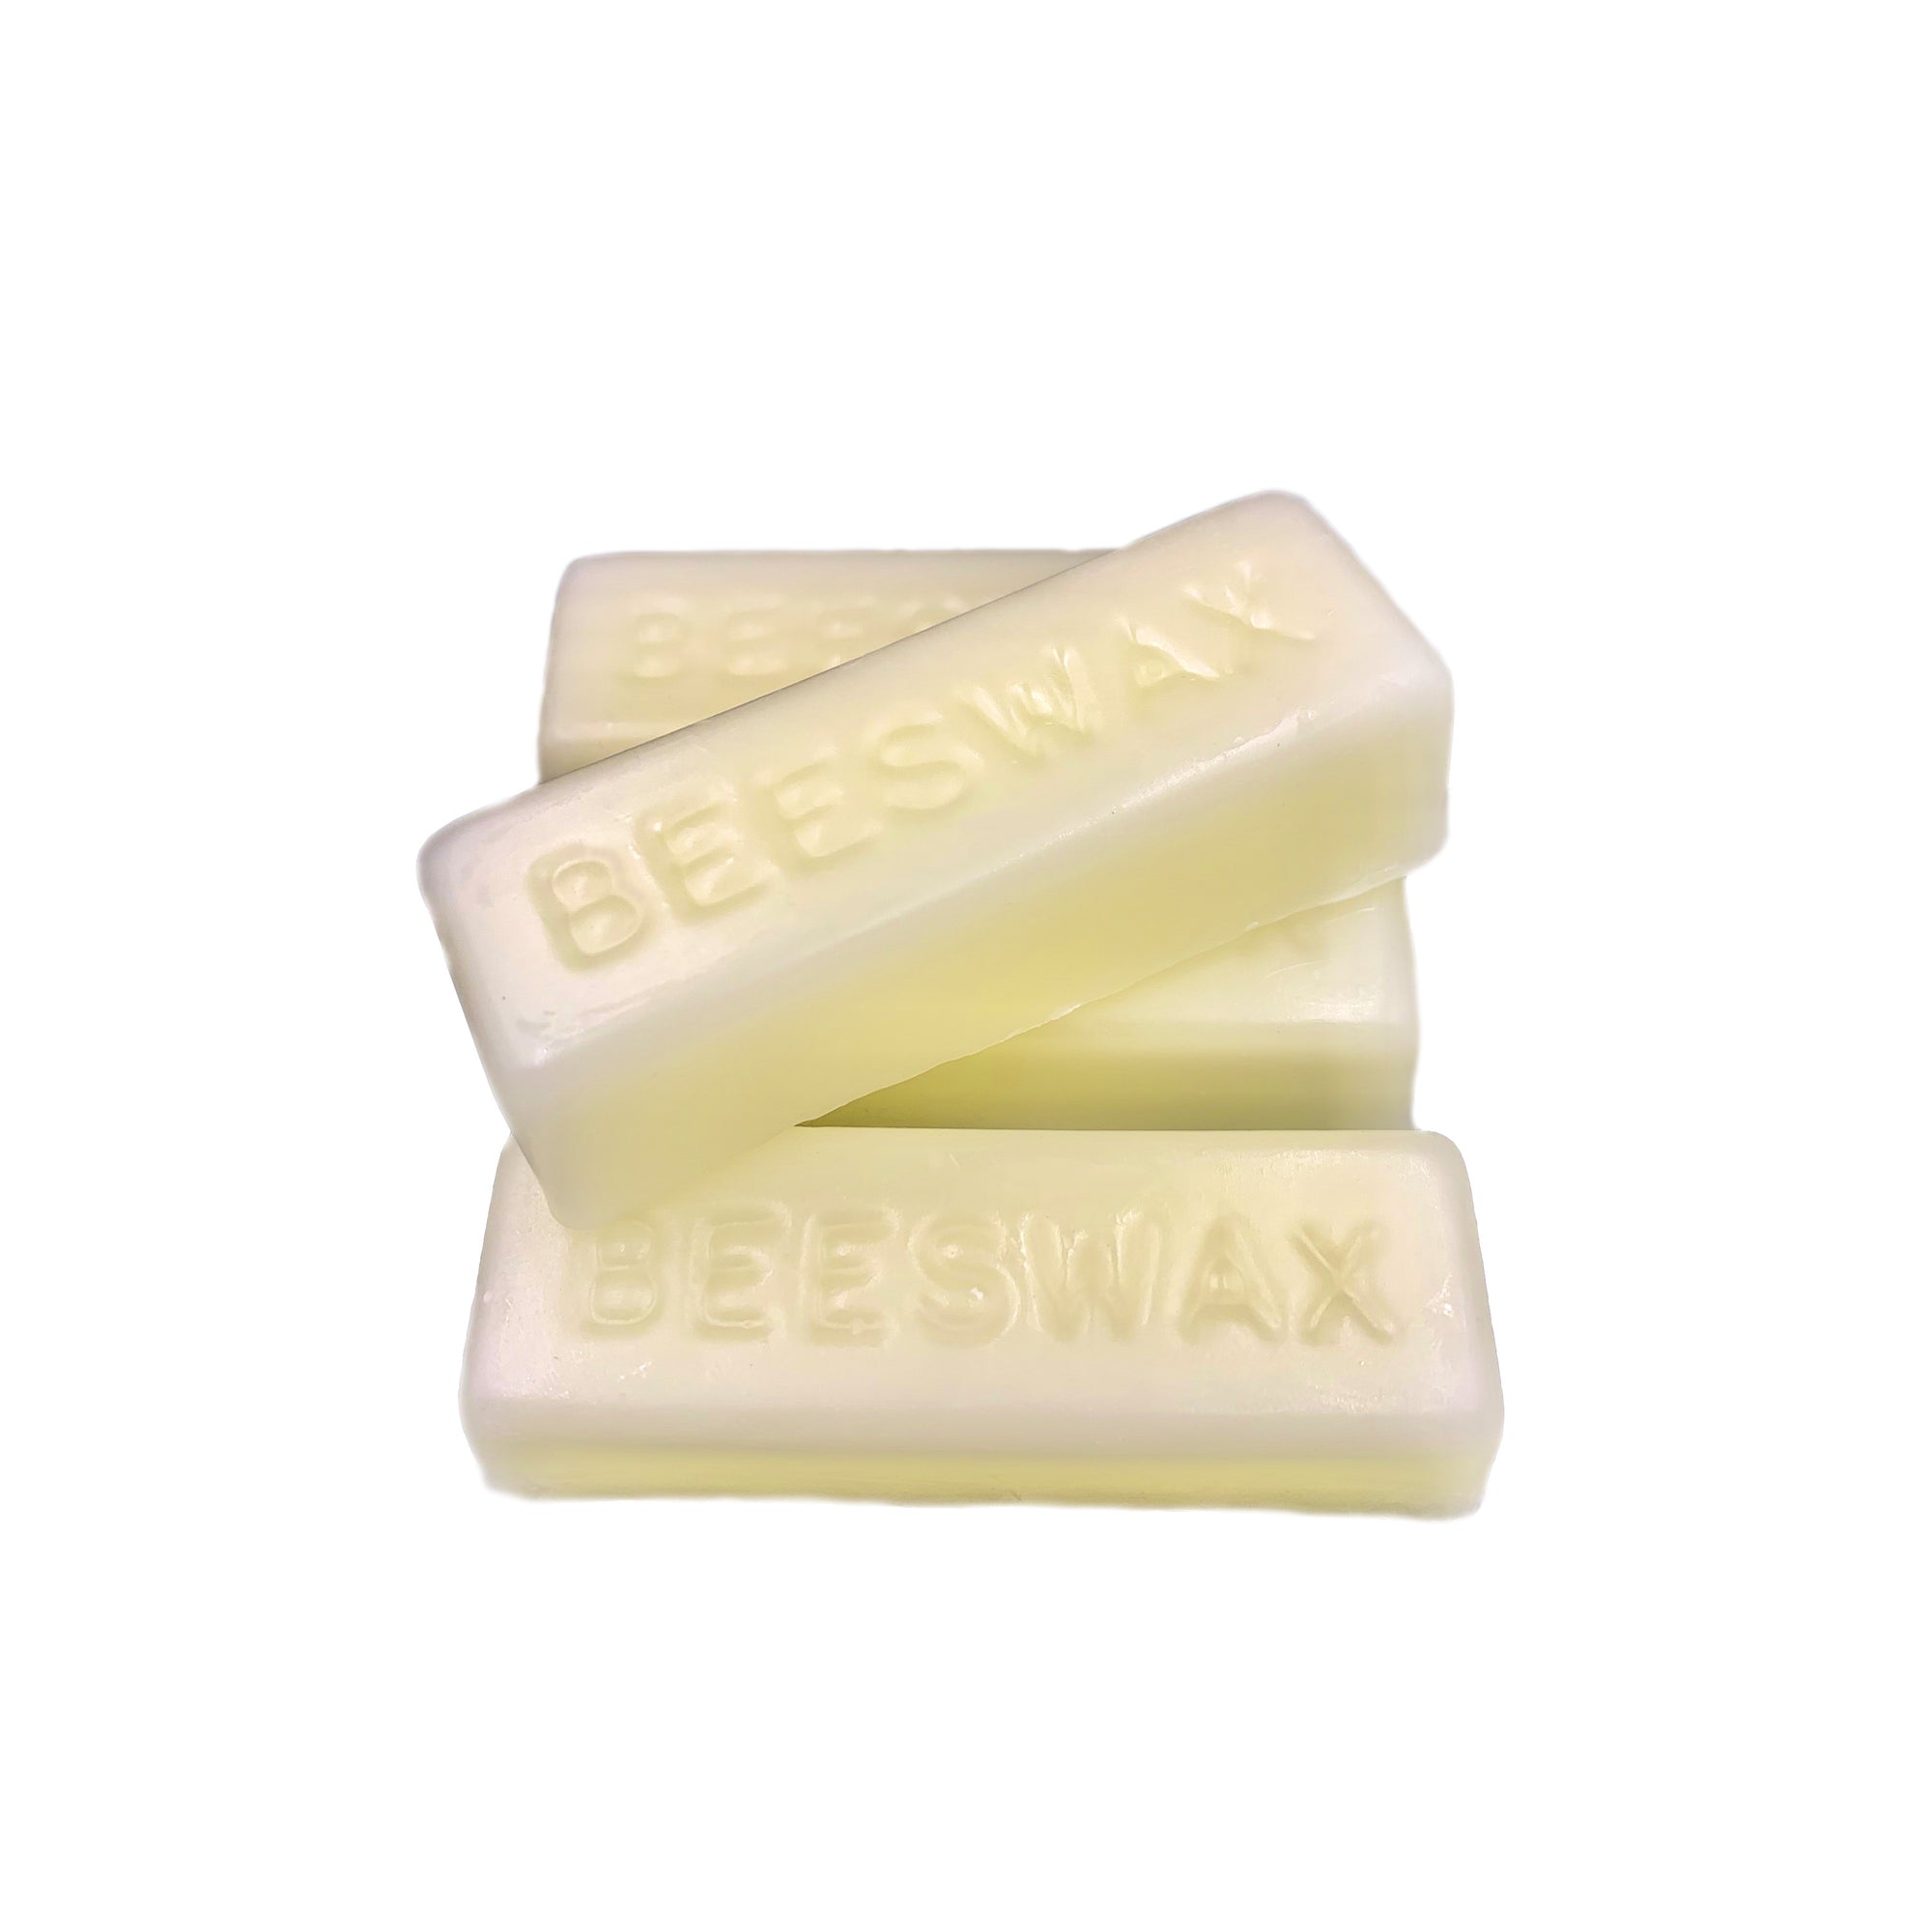 Pure, White Ivory Beeswax Blocks